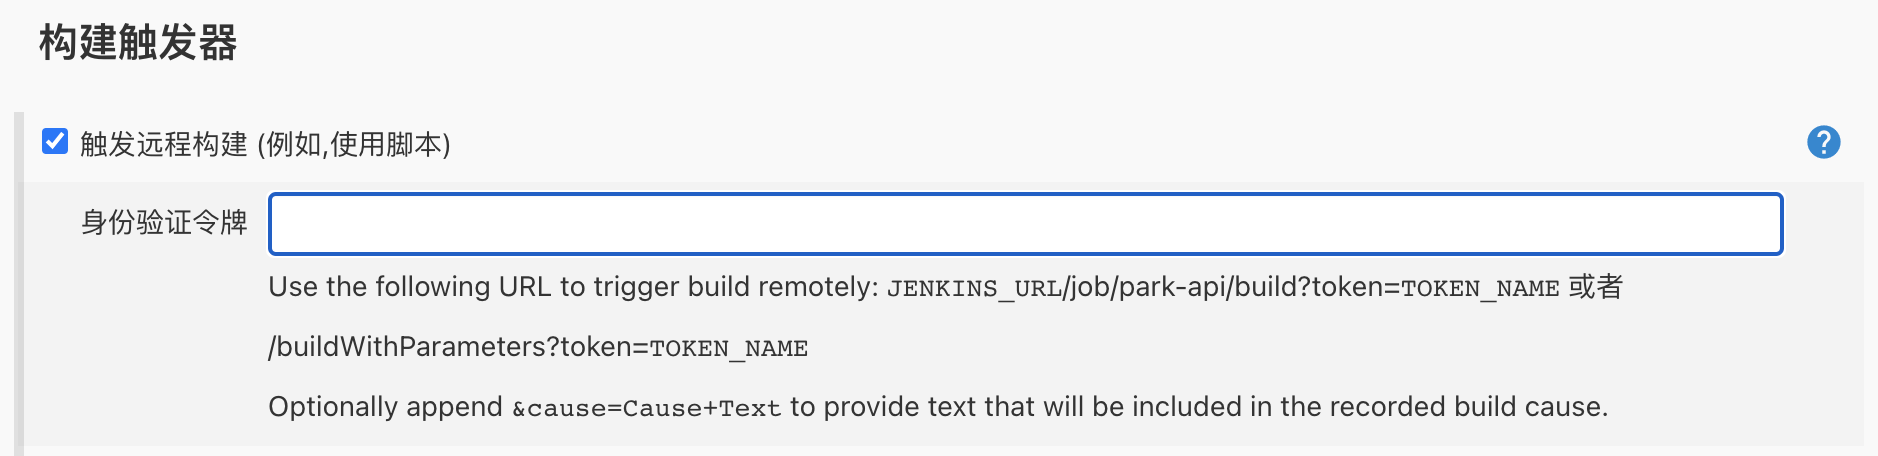 怎么使用Jenkins自动化构建工具进行敏捷开发